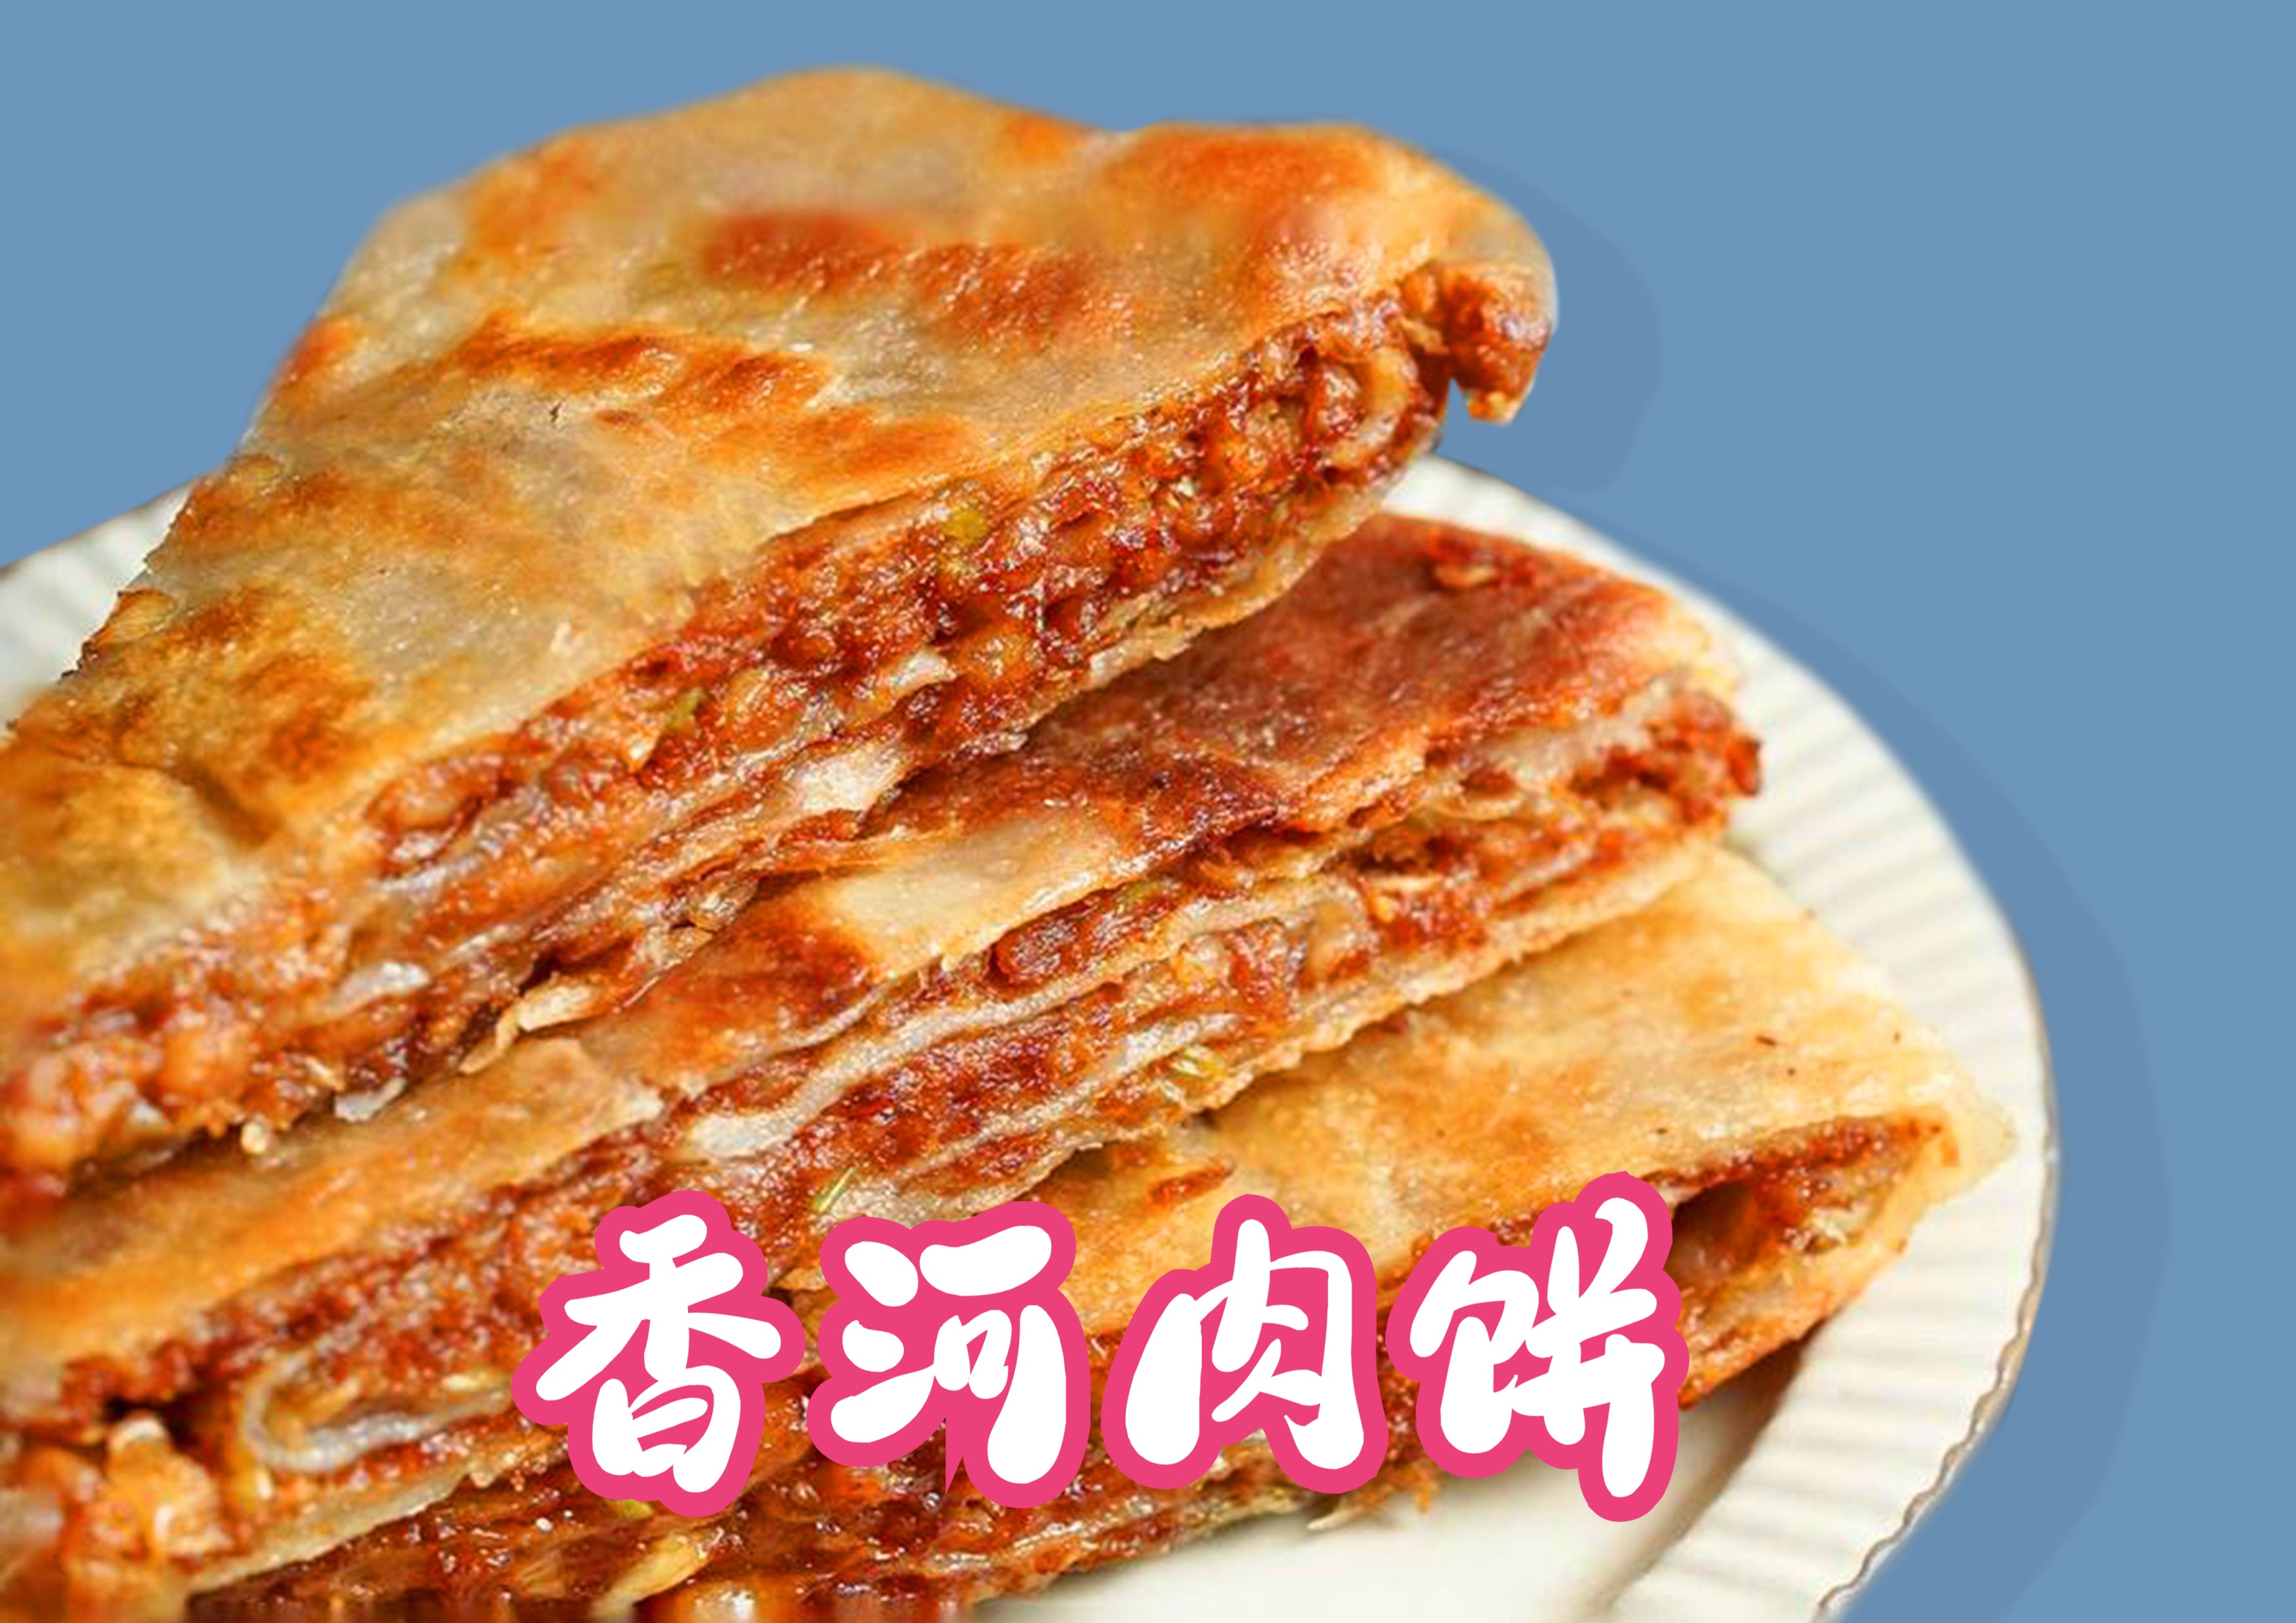 香河肉饼:外酥里嫩,油而不腻,香醇可口,河北特色小吃